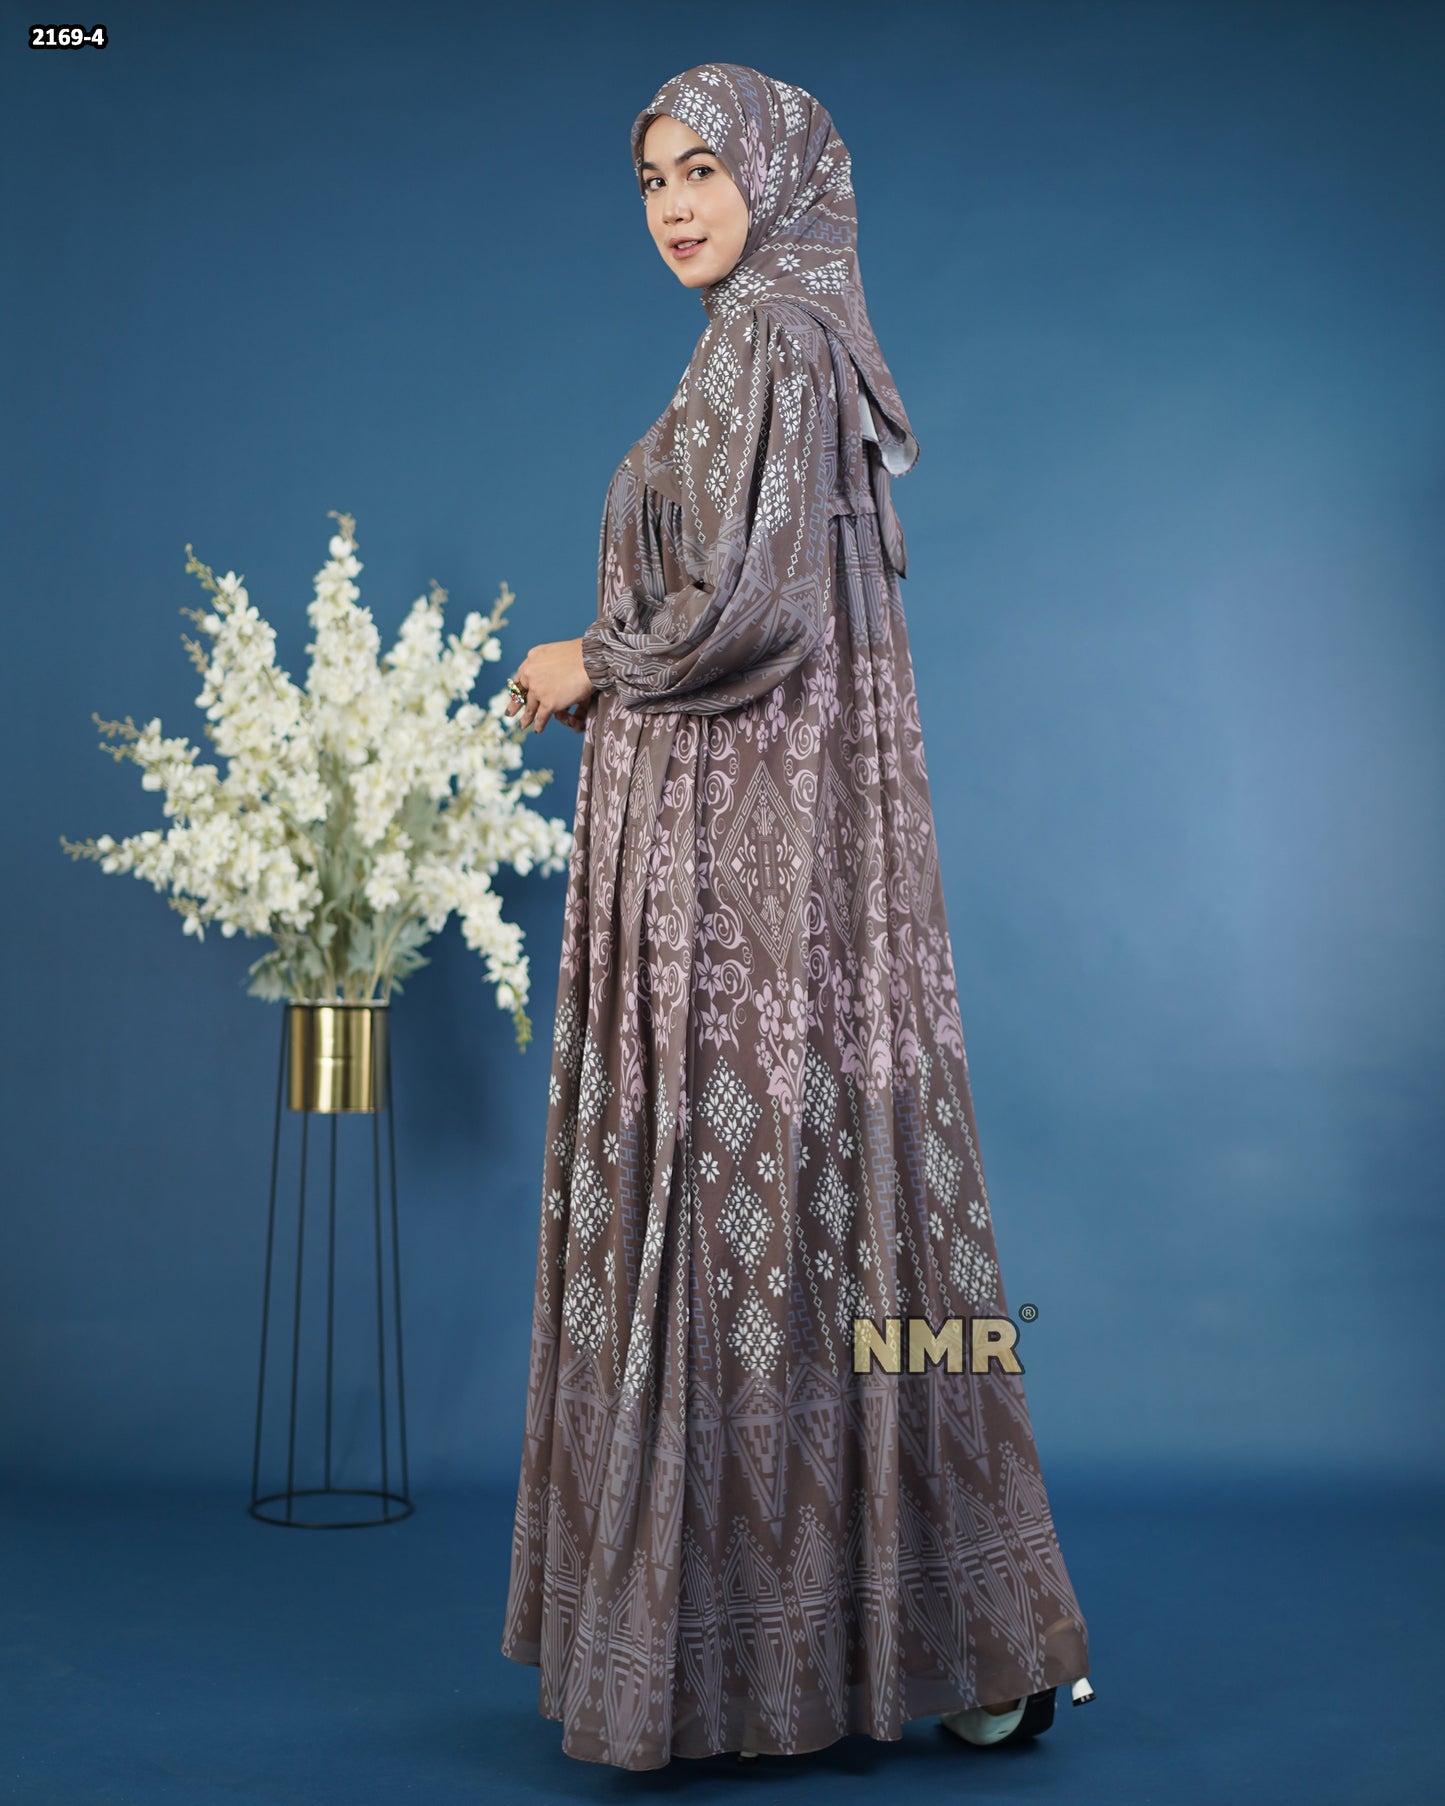 NMR Gamis Cerutty BabyDoll Premium Vol 2169-4 ( INC Hijab )